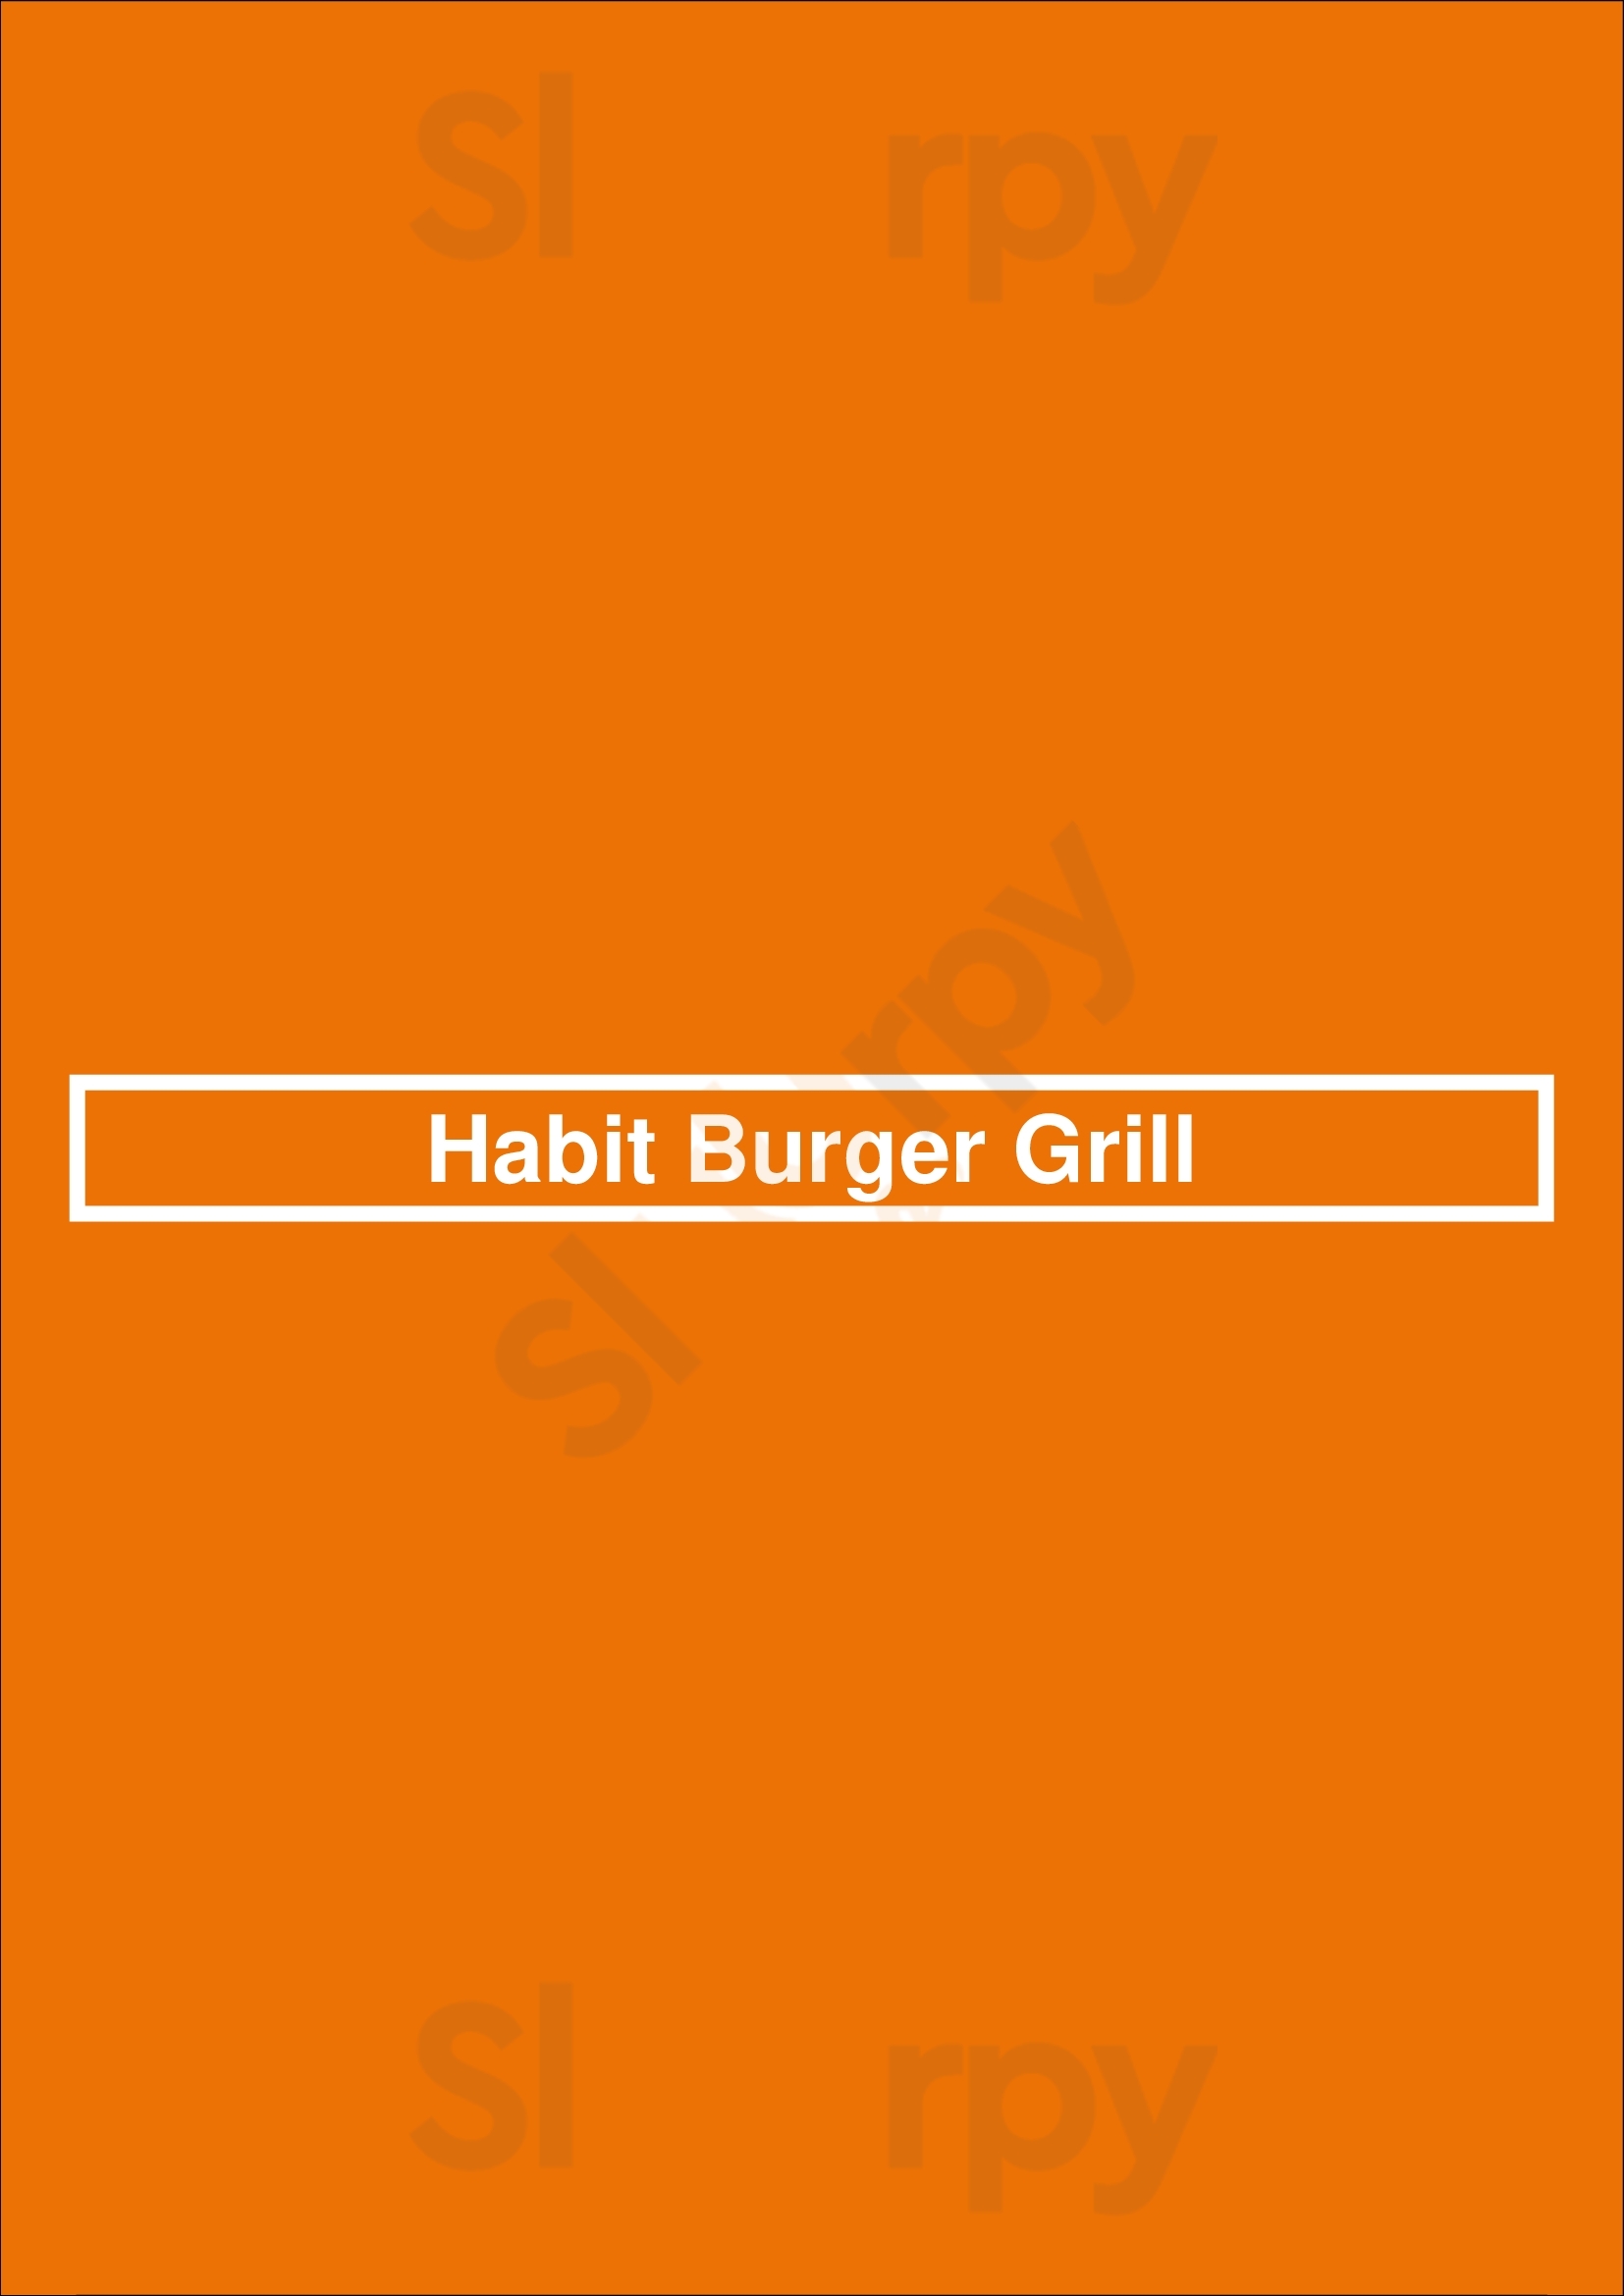 Habit Burger Grill Huntington Beach Menu - 1